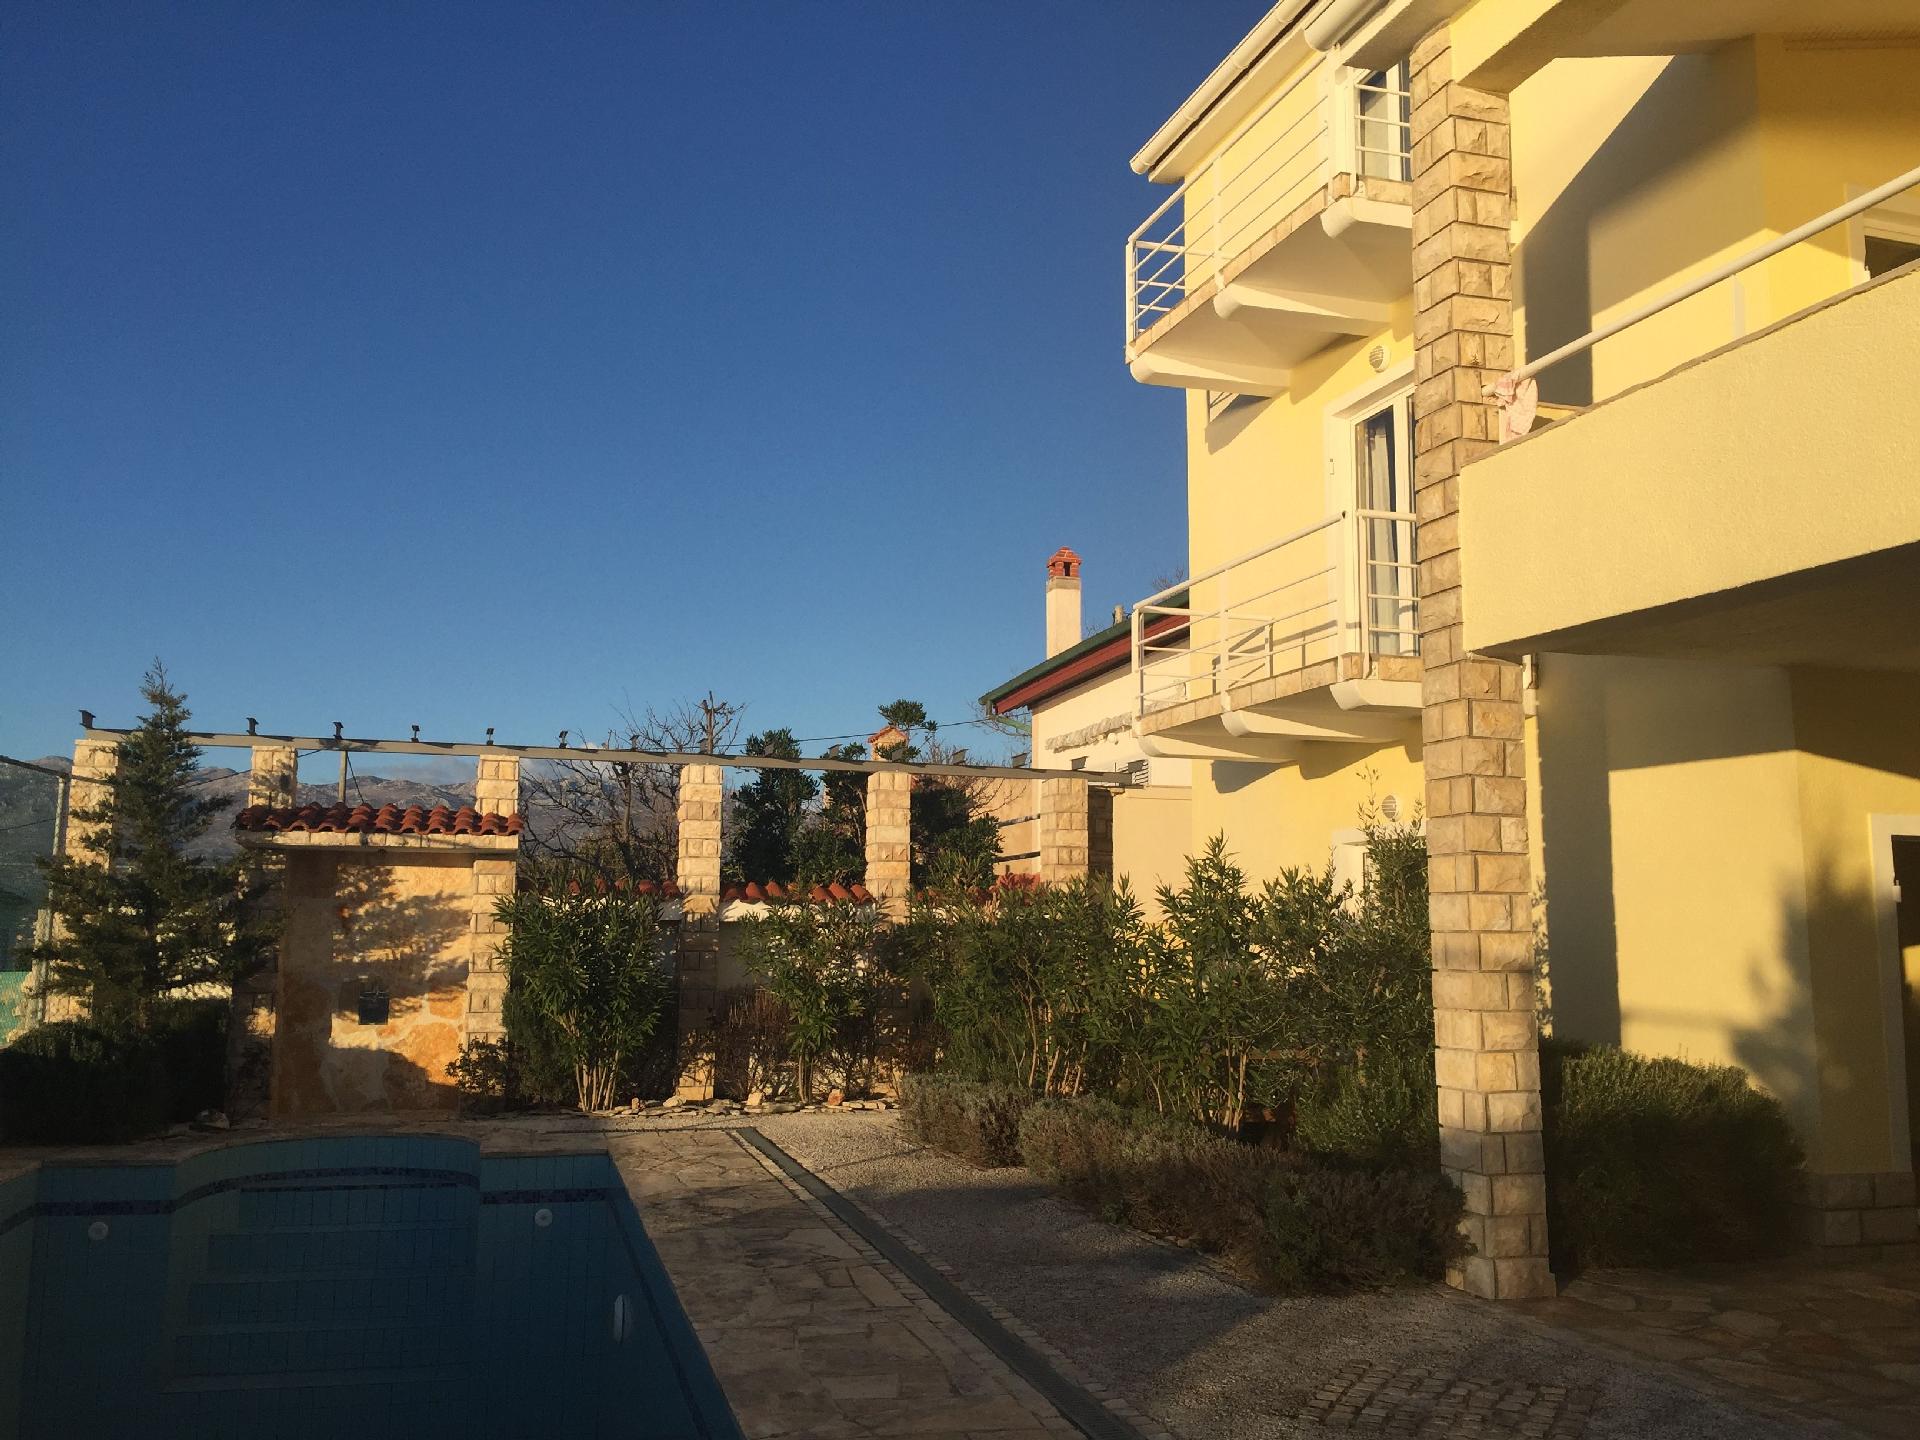 Ferienwohnung für vier Personen mit Balkon im Ferienhaus in Europa